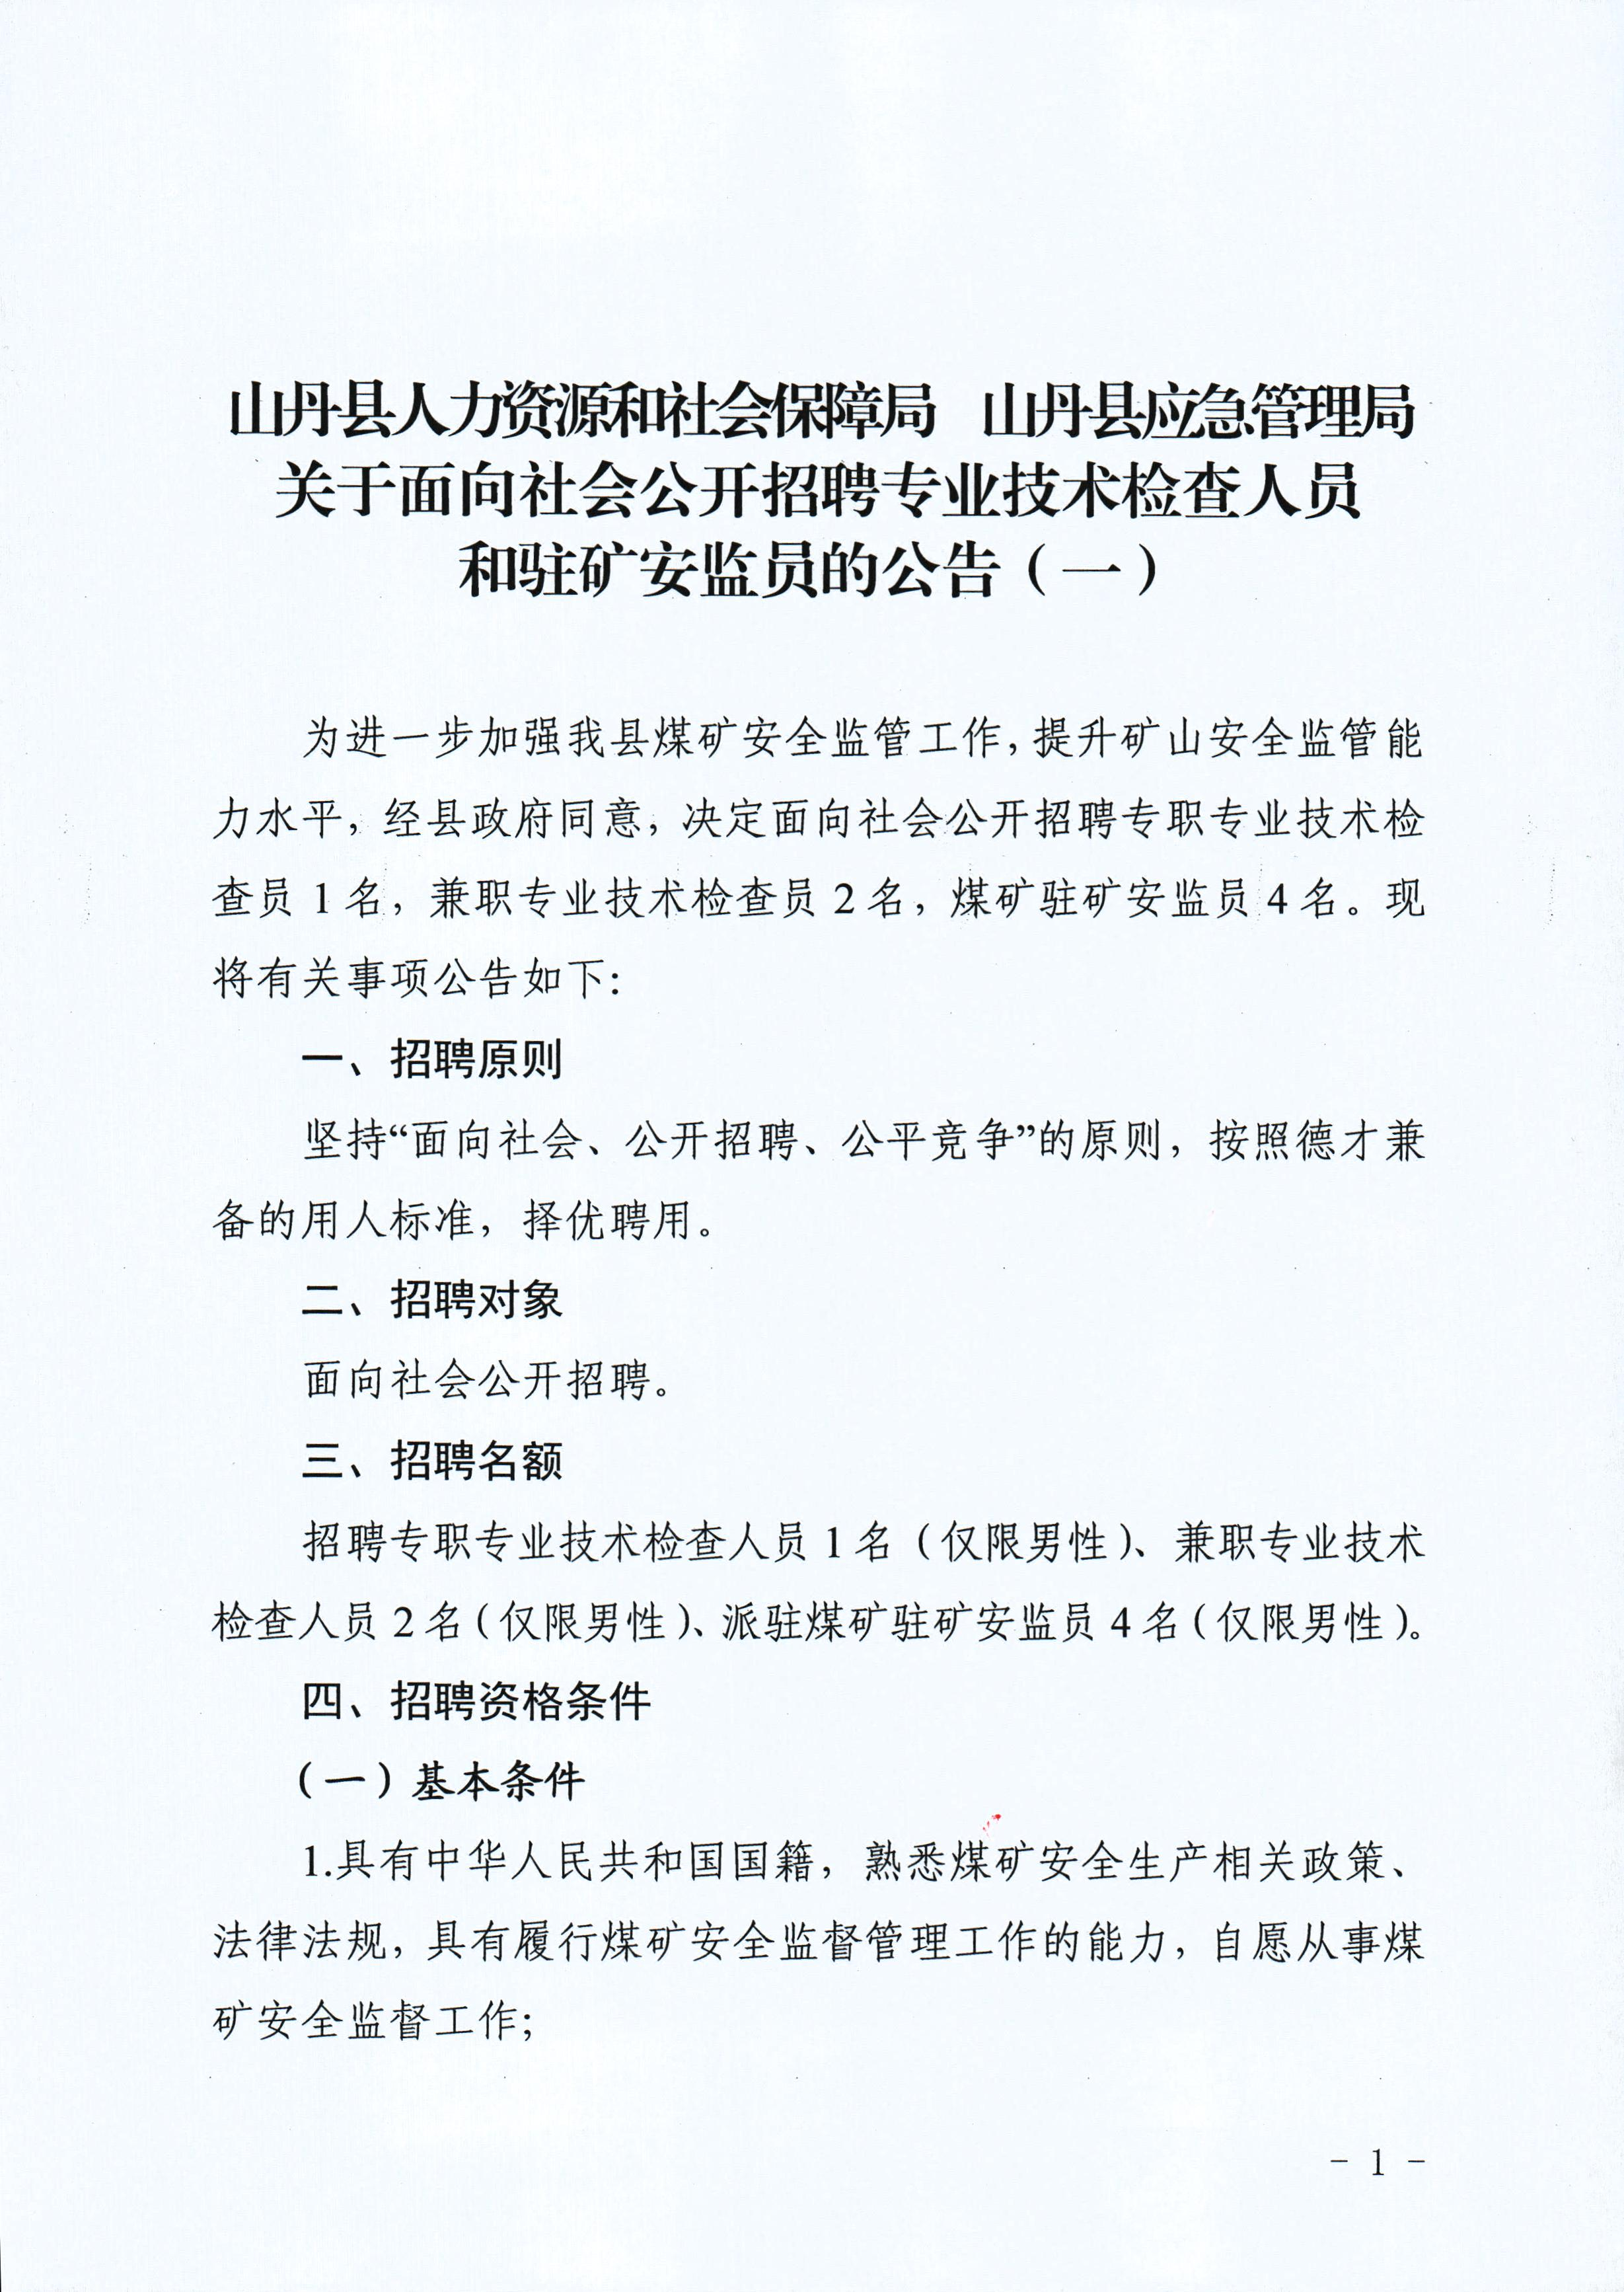 2022年甘肃张掖山丹县面向社会招聘专业技术检查人员和驻矿安监员公告（一）